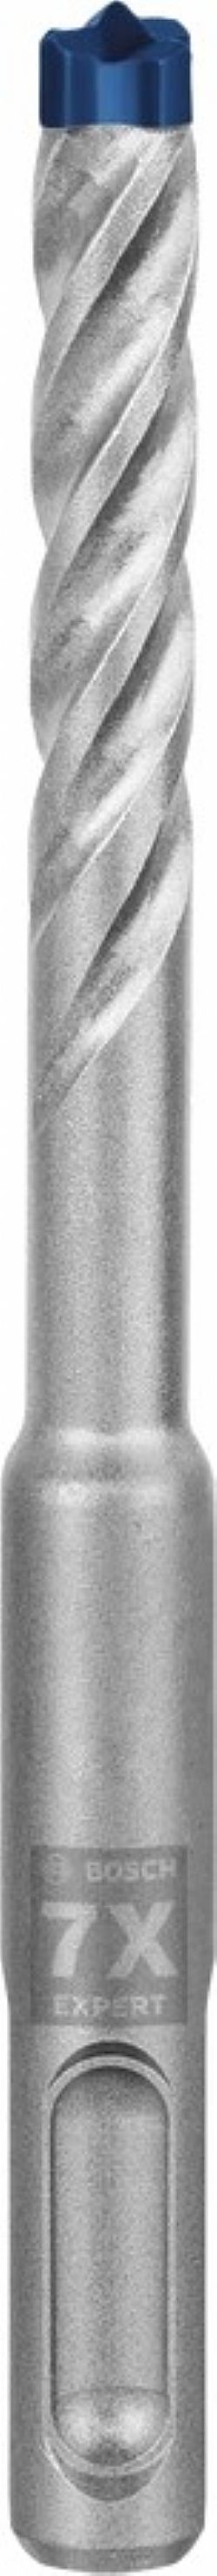 Κρουστικό τρυπάνι (8.0Χ115mm) EXPERT SDS-PLUS-7X BOSCH